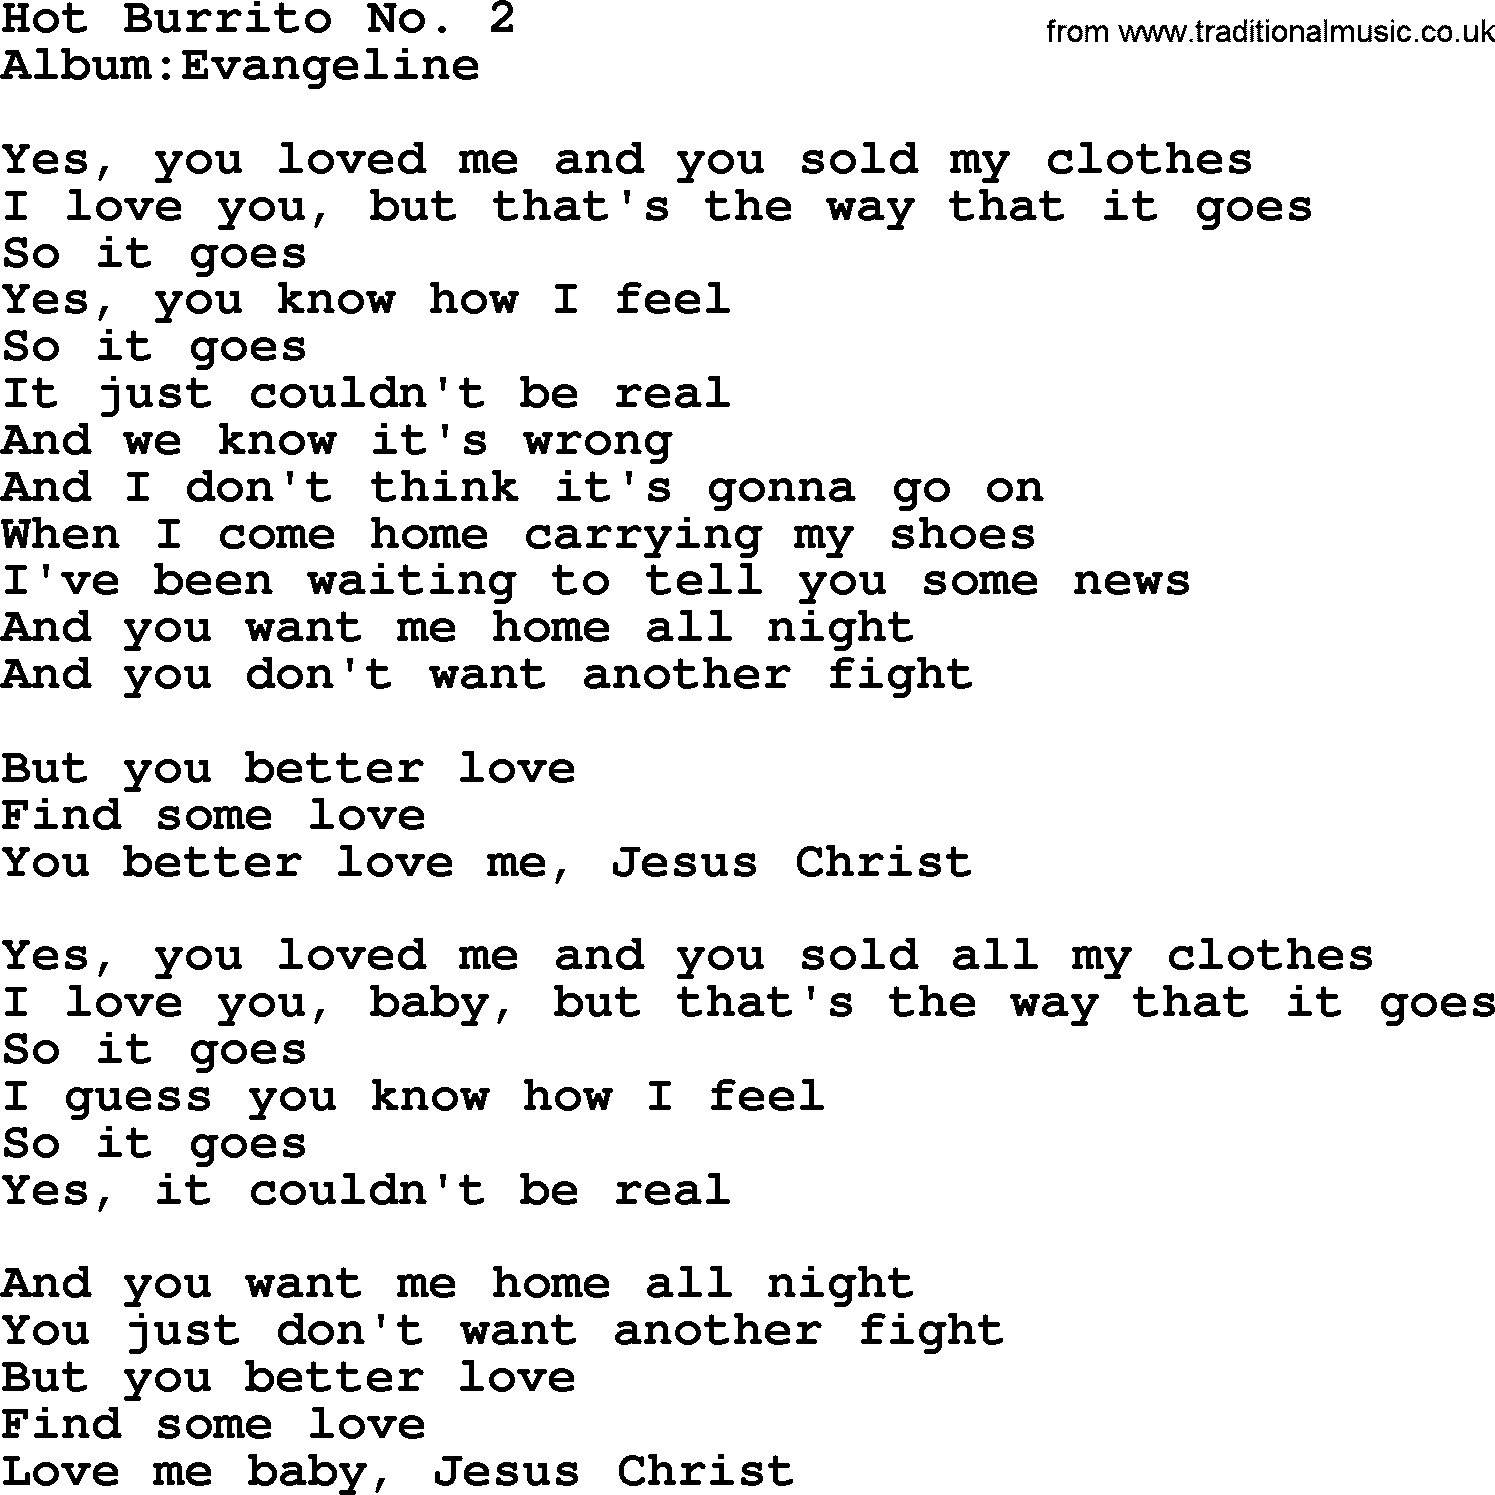 Emmylou Harris song: Hot Burrito No. 2 lyrics